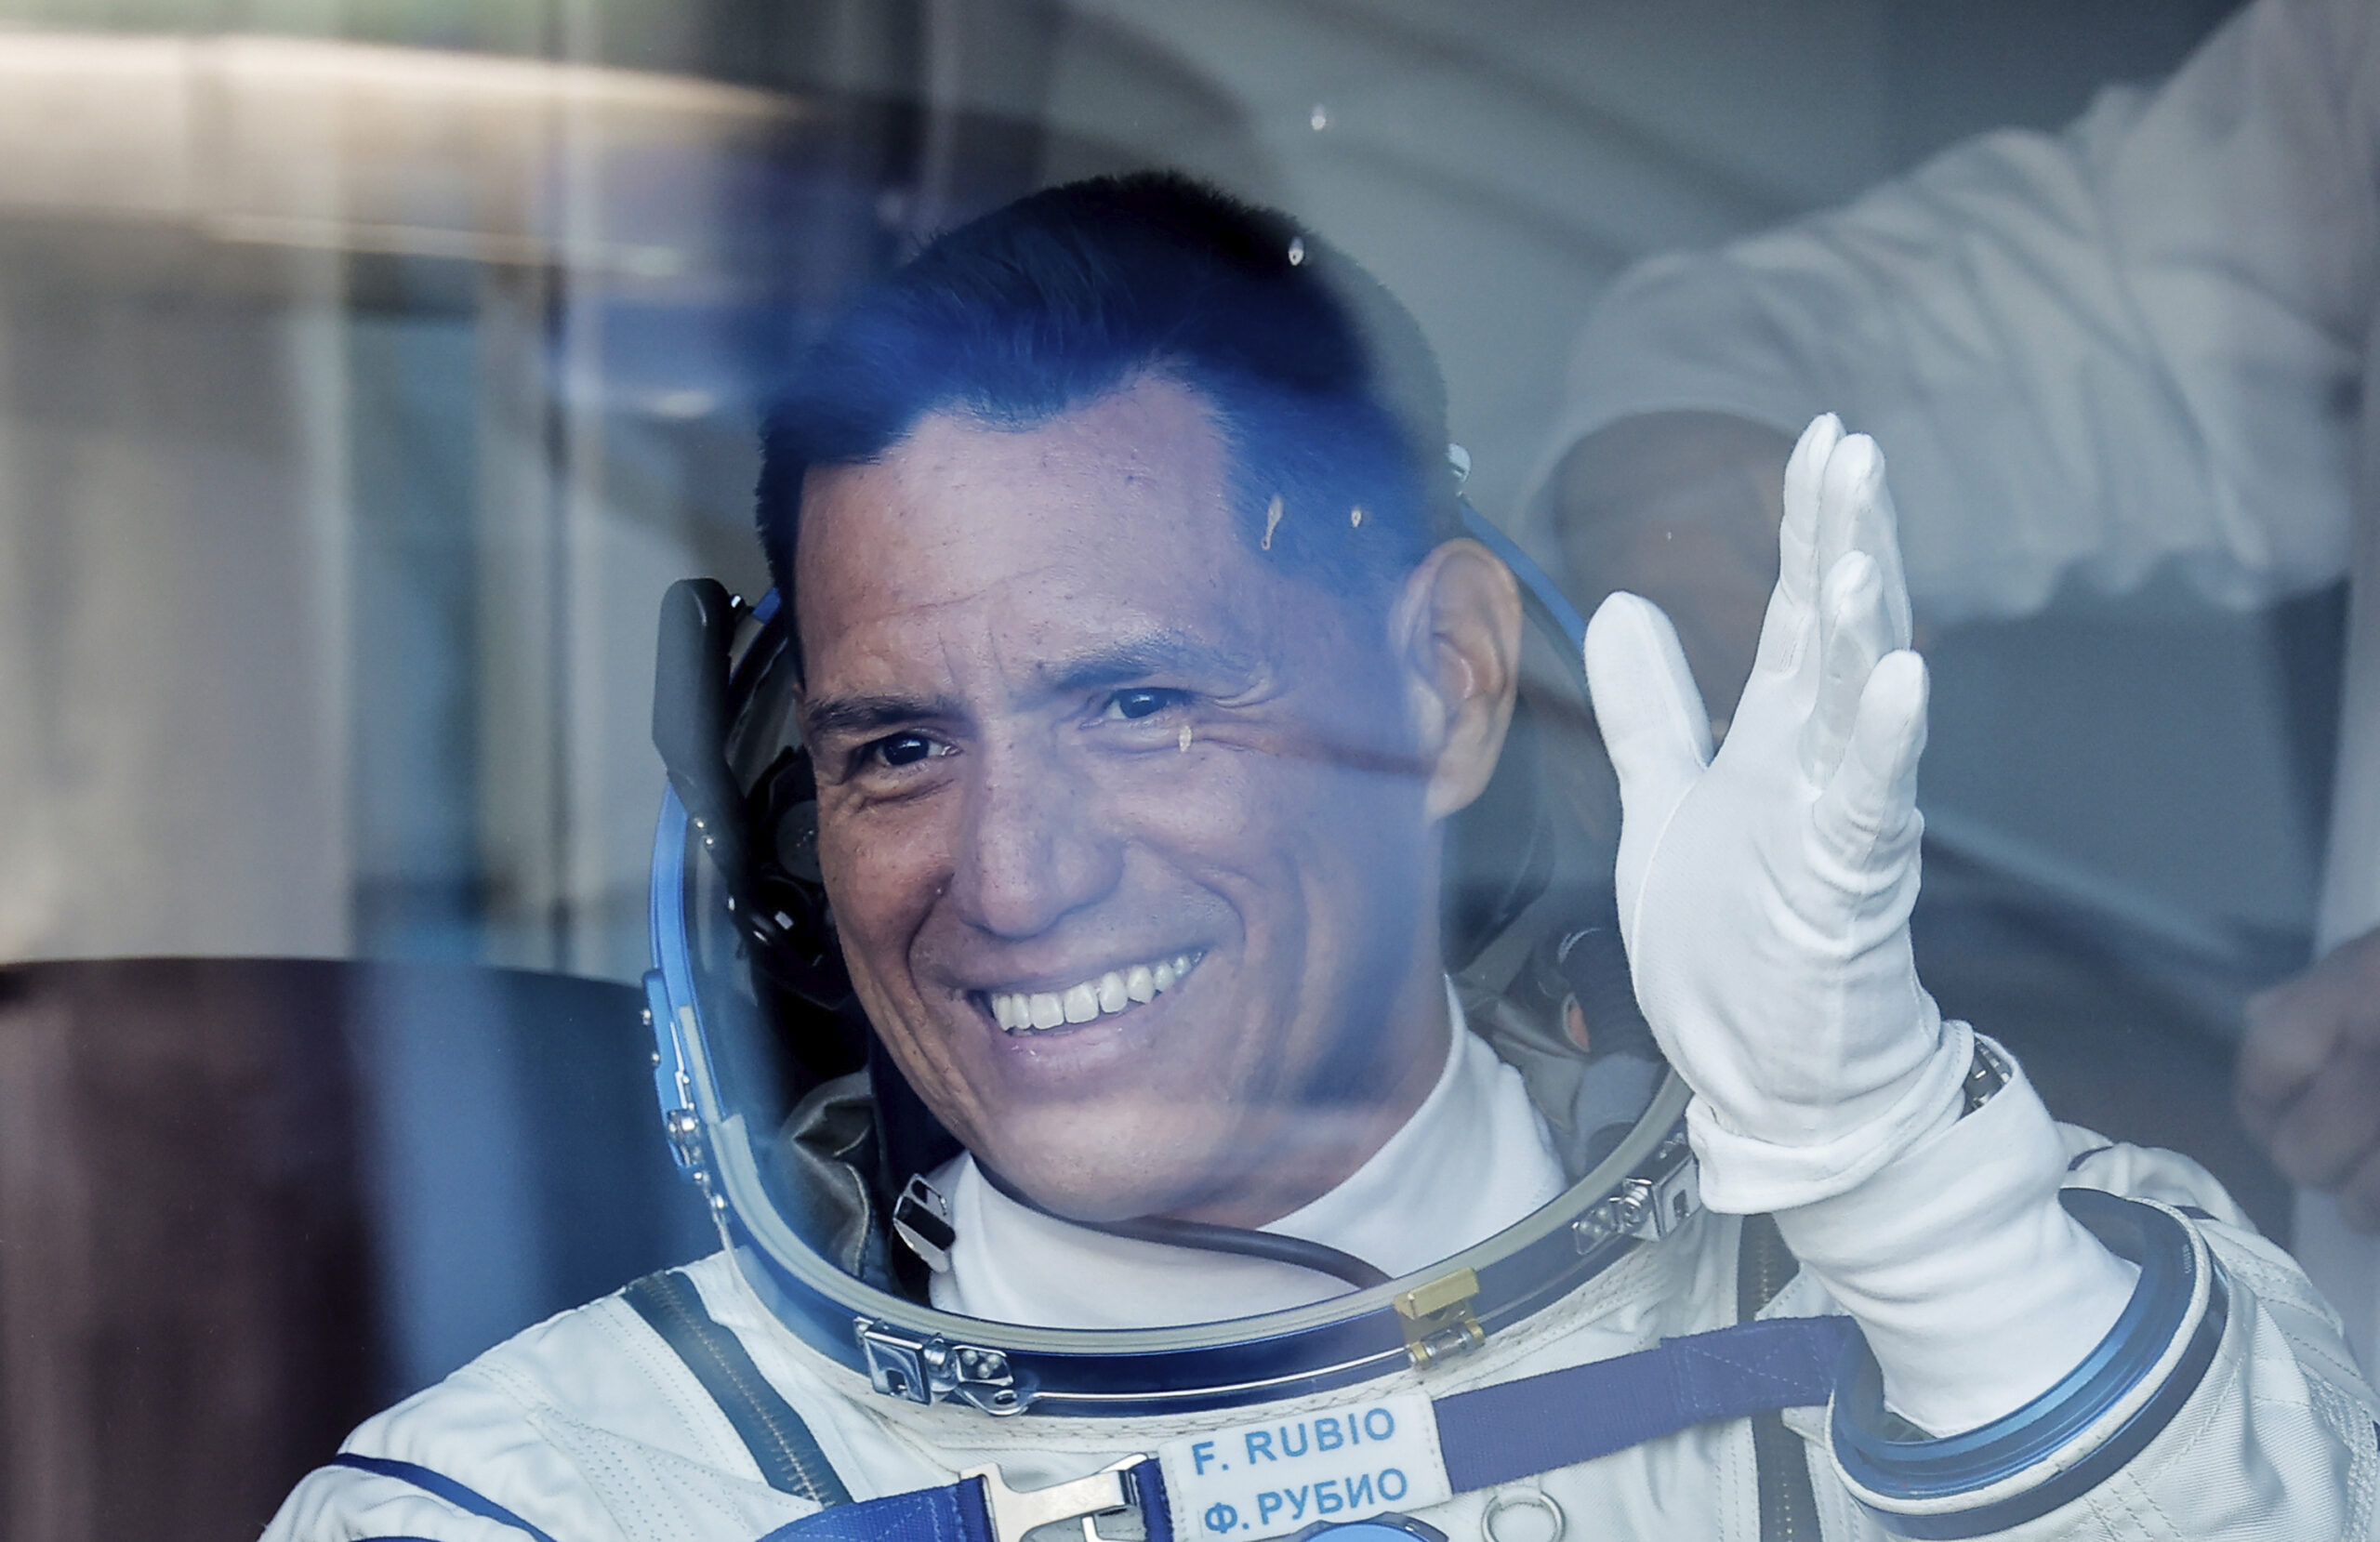 Frank Rubio theu rekordin si astronauti që ka qëndruar më shumë në hapësirë